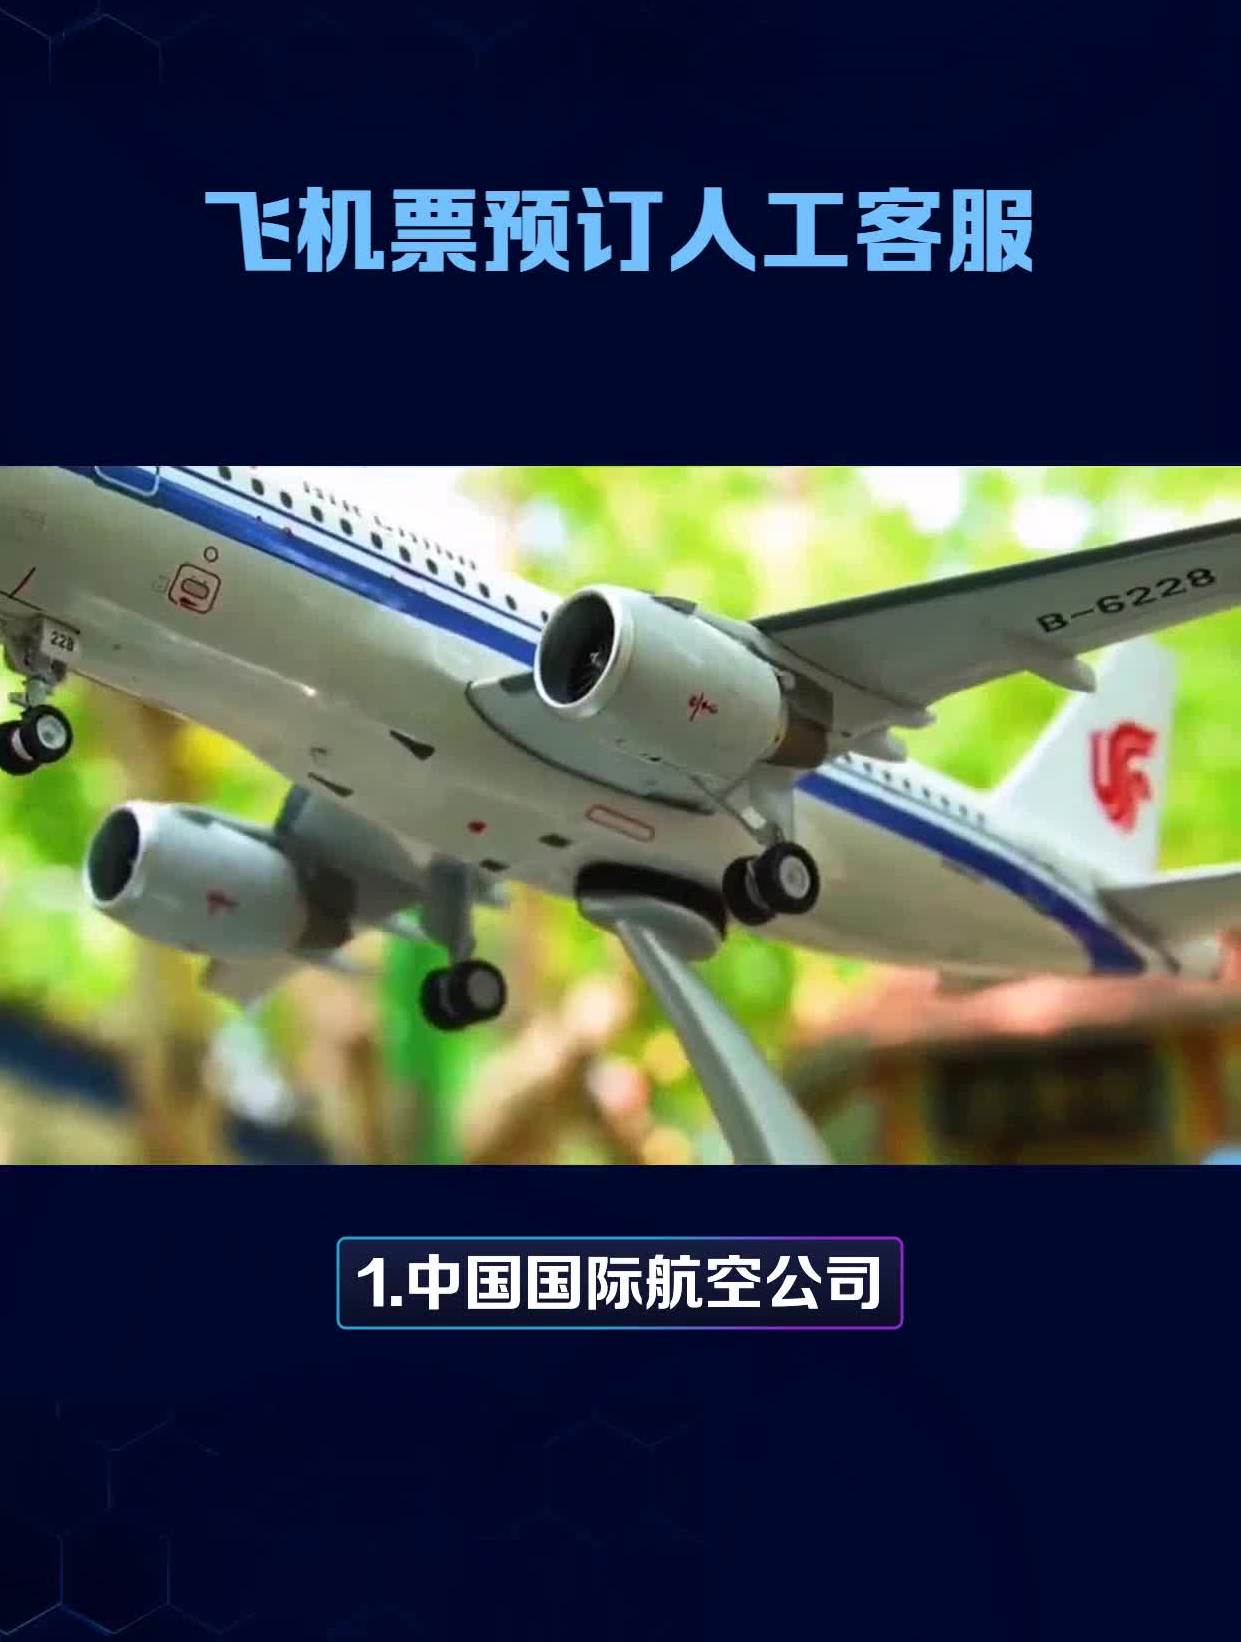 飞机客服电话人工服务热线-深圳飞机客服电话人工服务热线